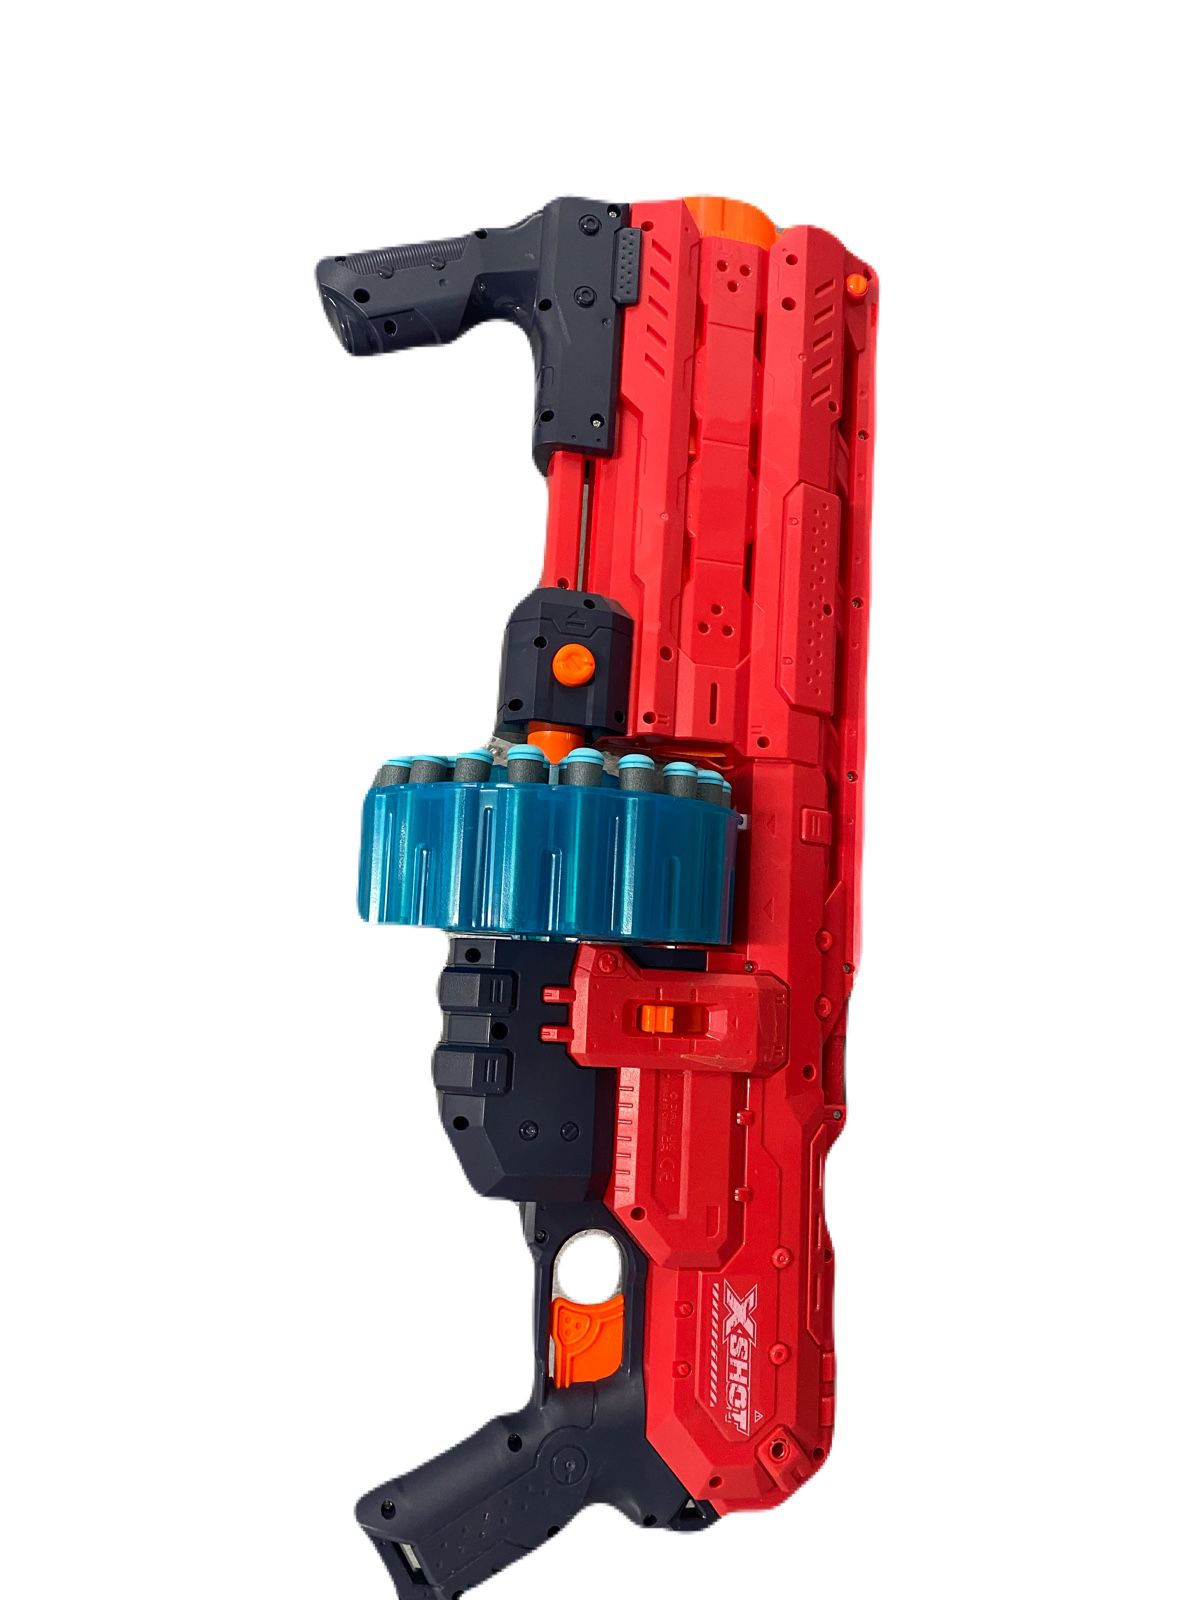 NERF X—SHOT  Toy gun very good condition